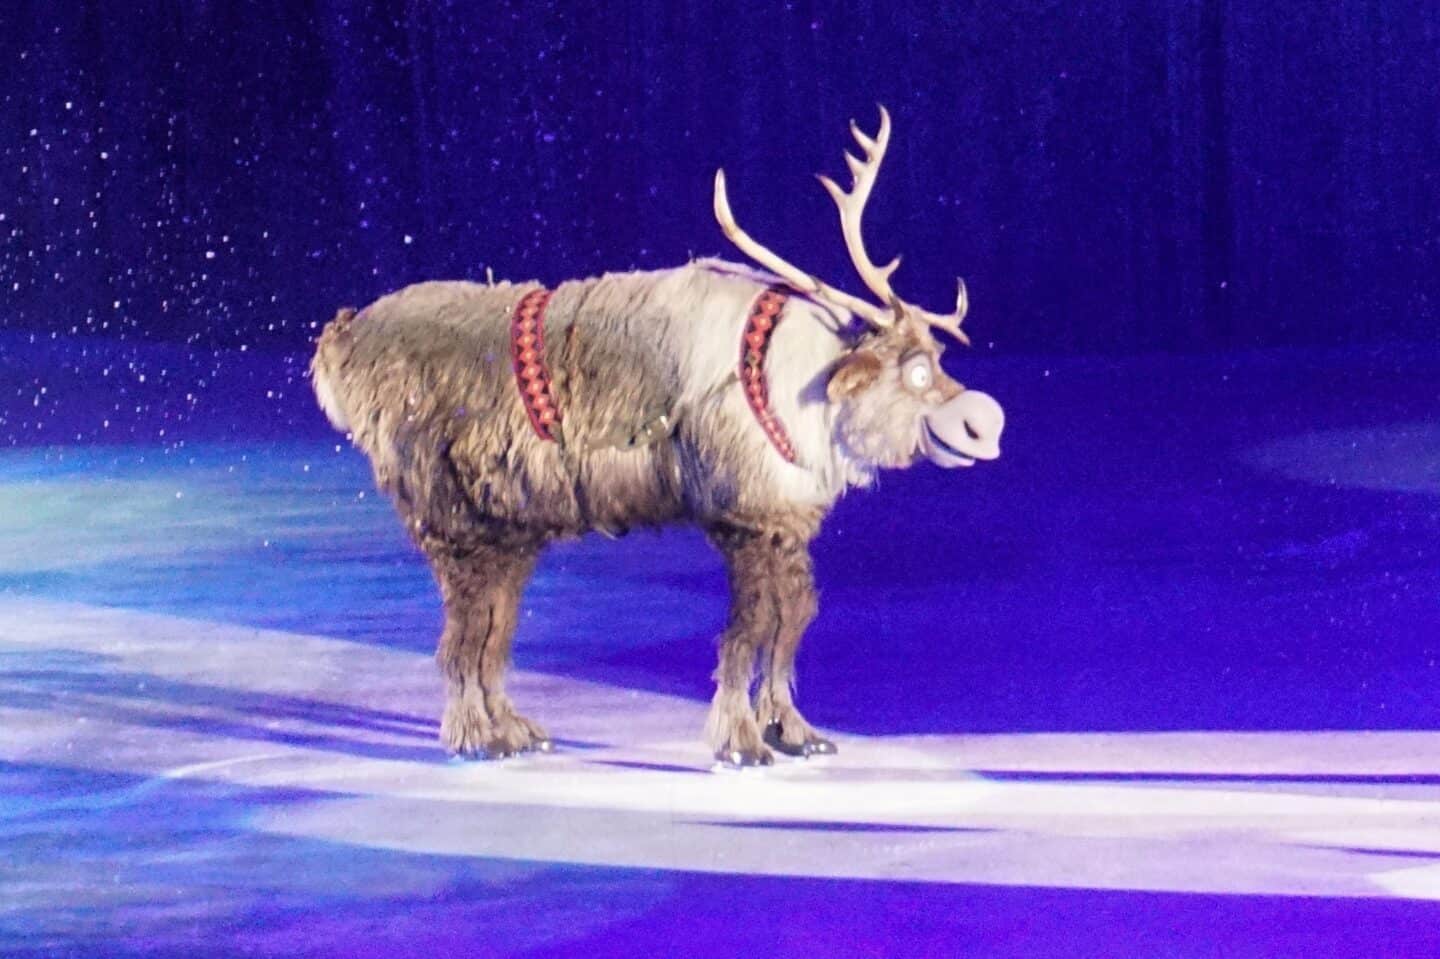 Sven the reindeer from Frozen